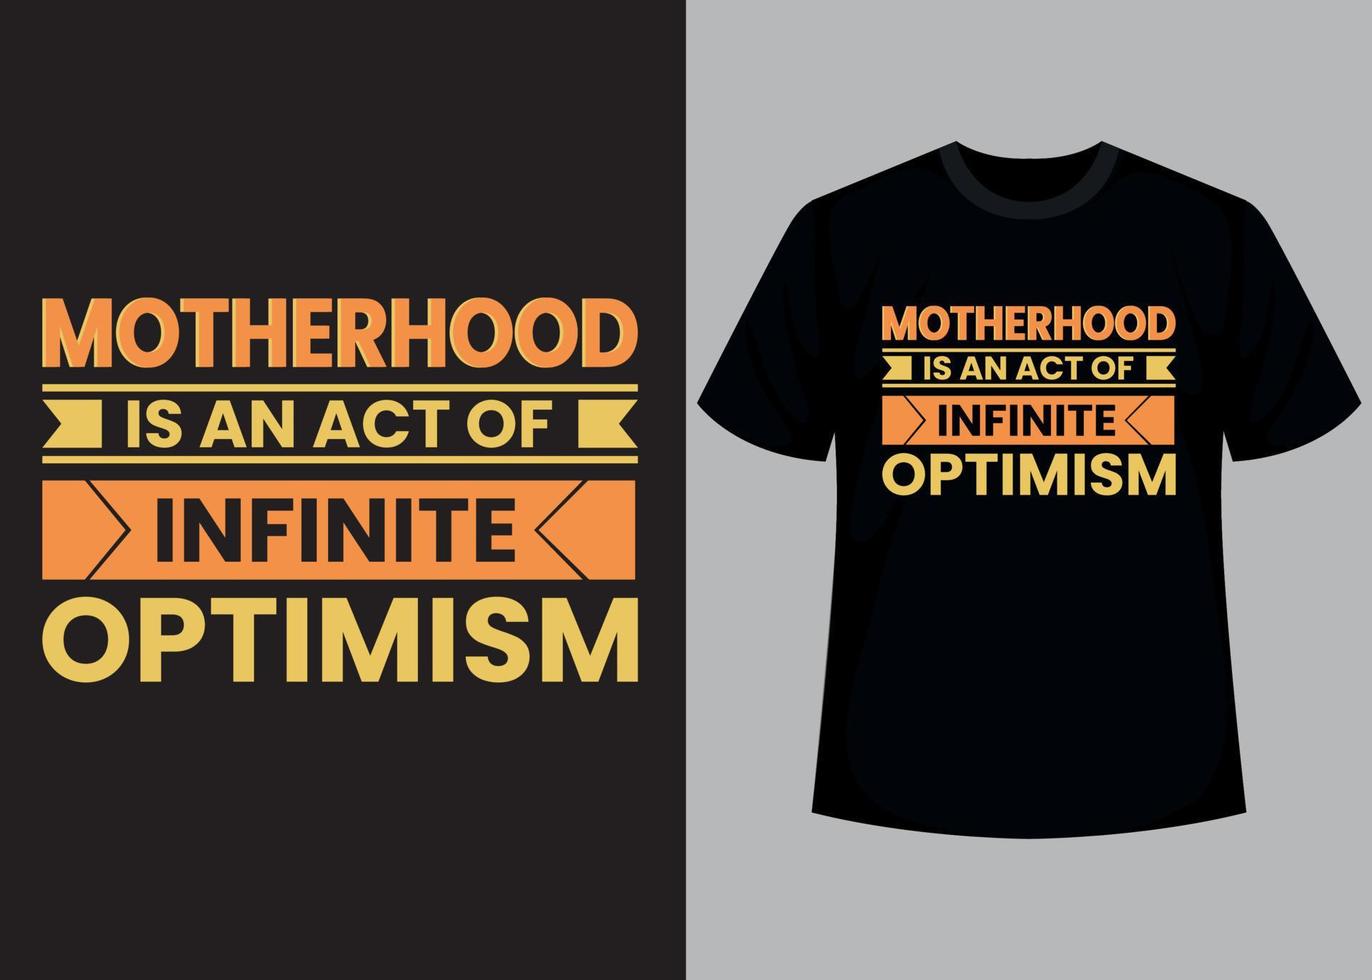 mors dag typografi t-shirt design vektor